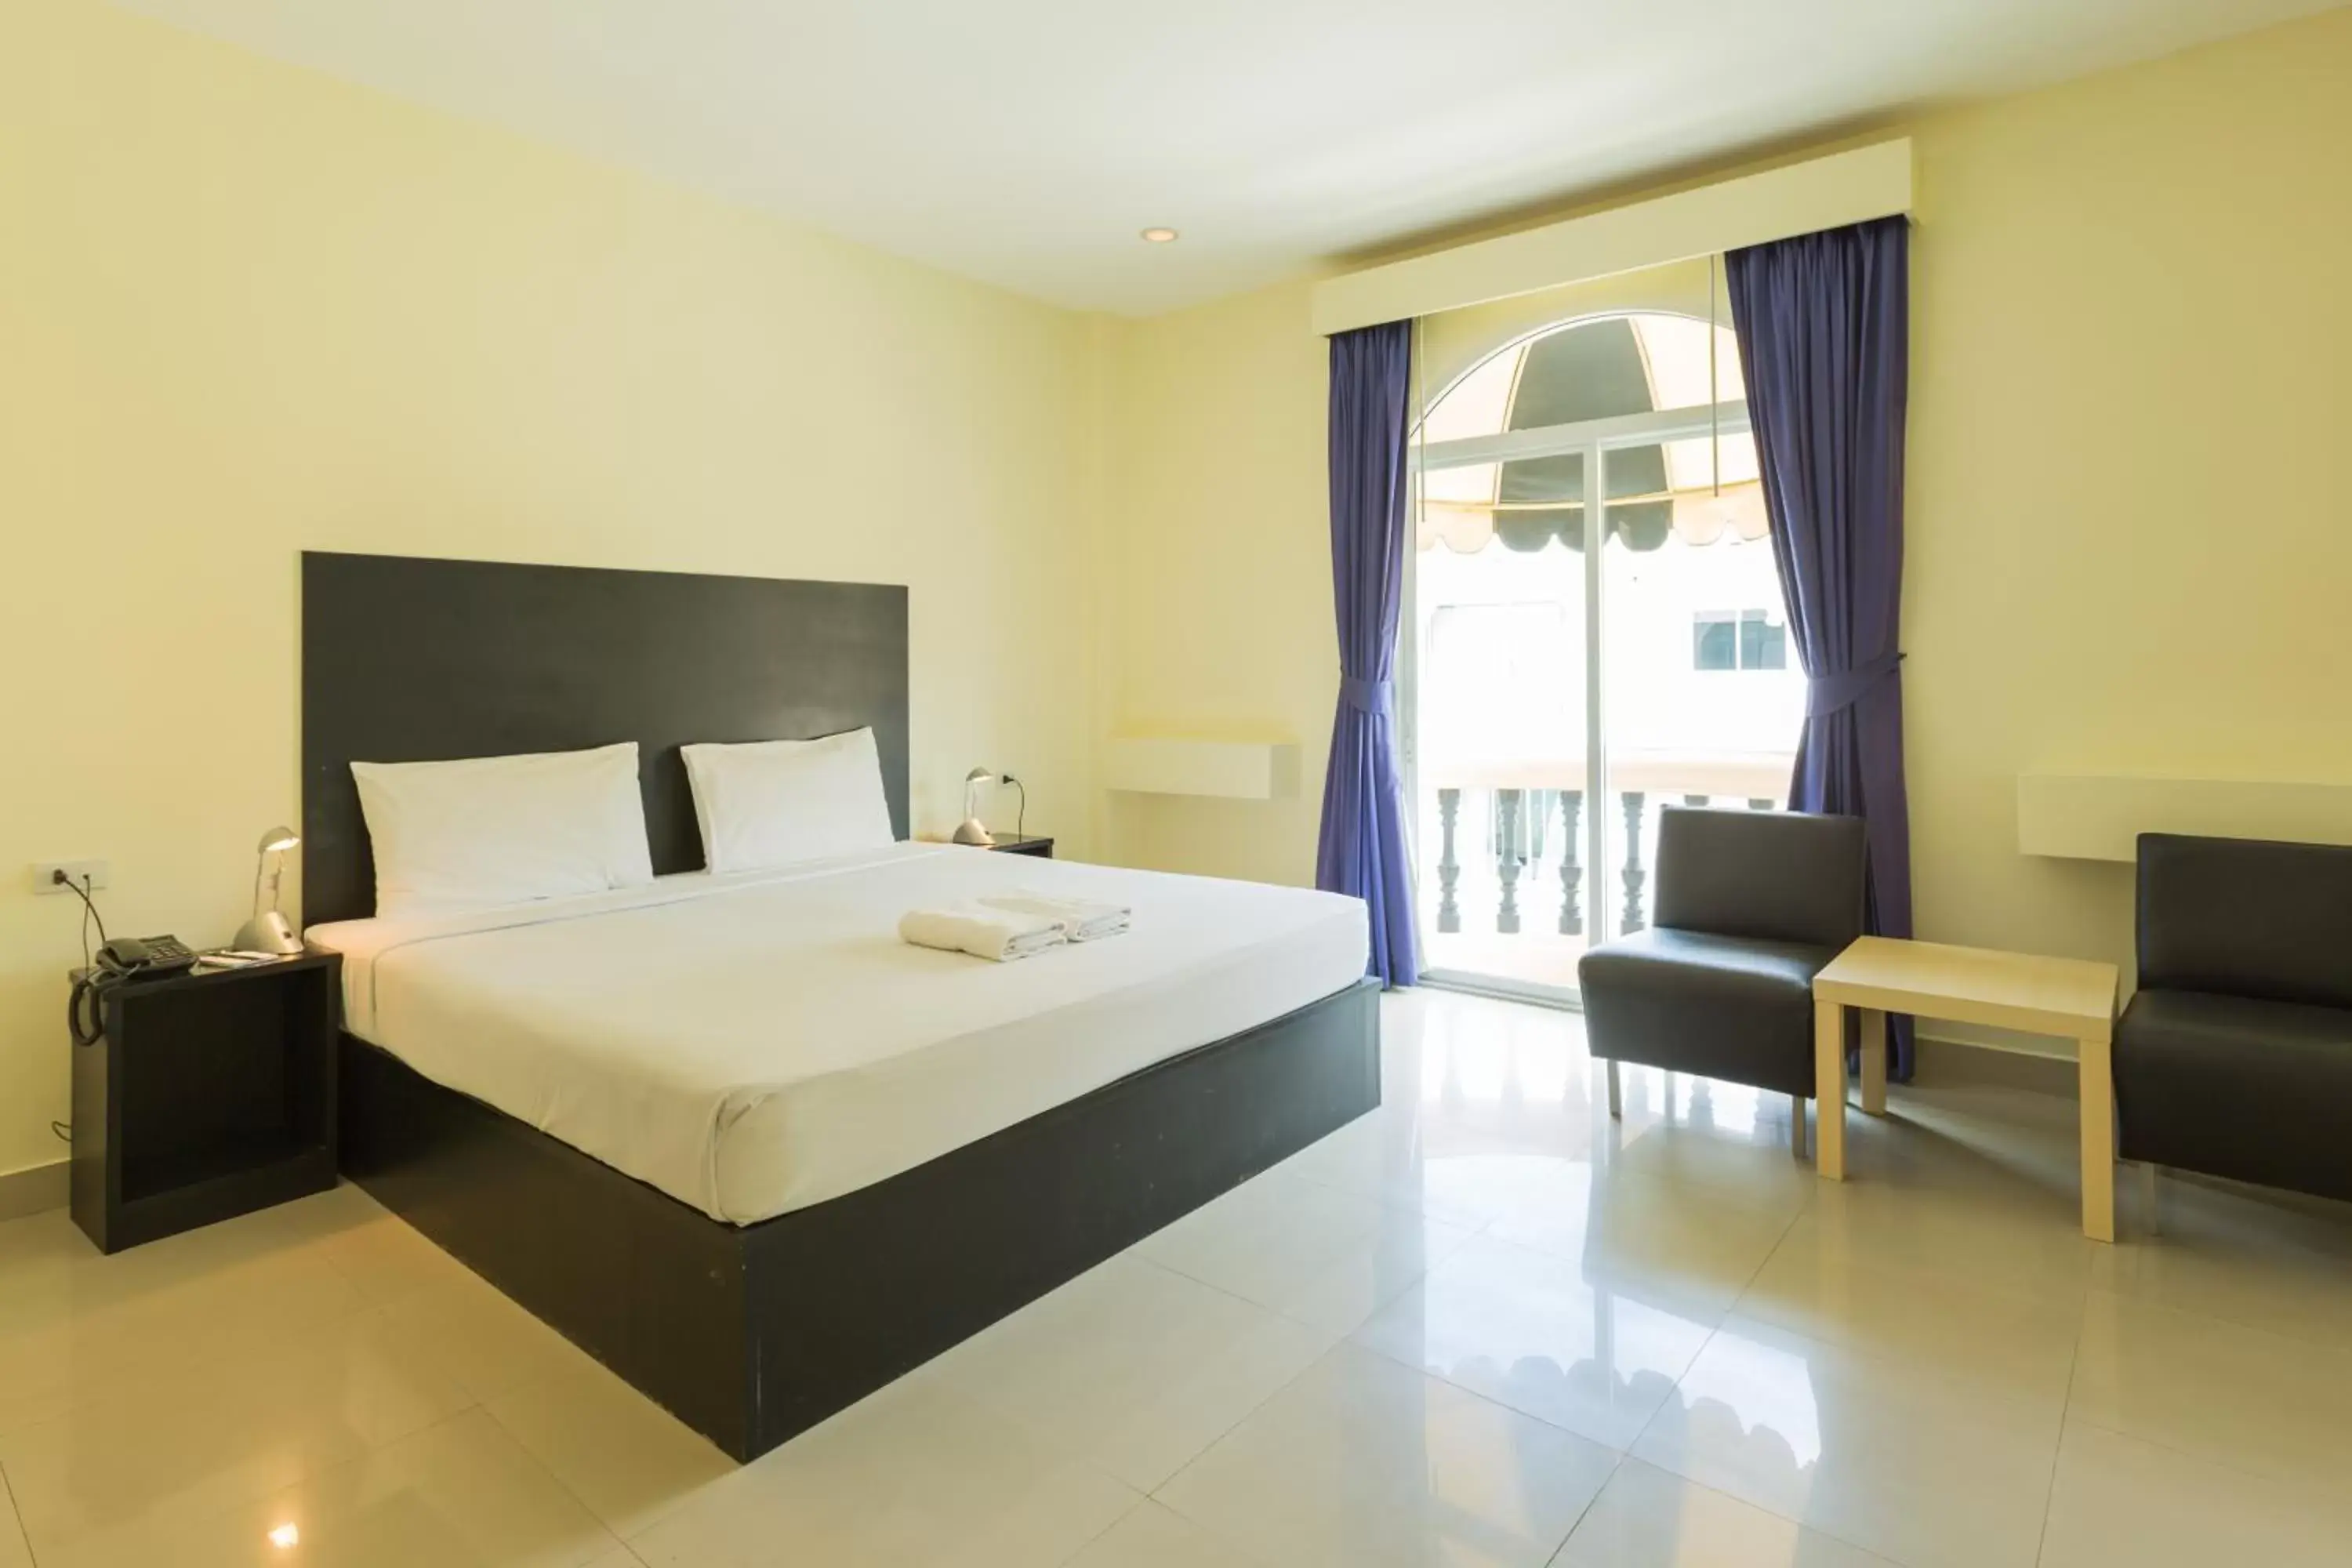 Bedroom, Room Photo in Zing Resort & Spa